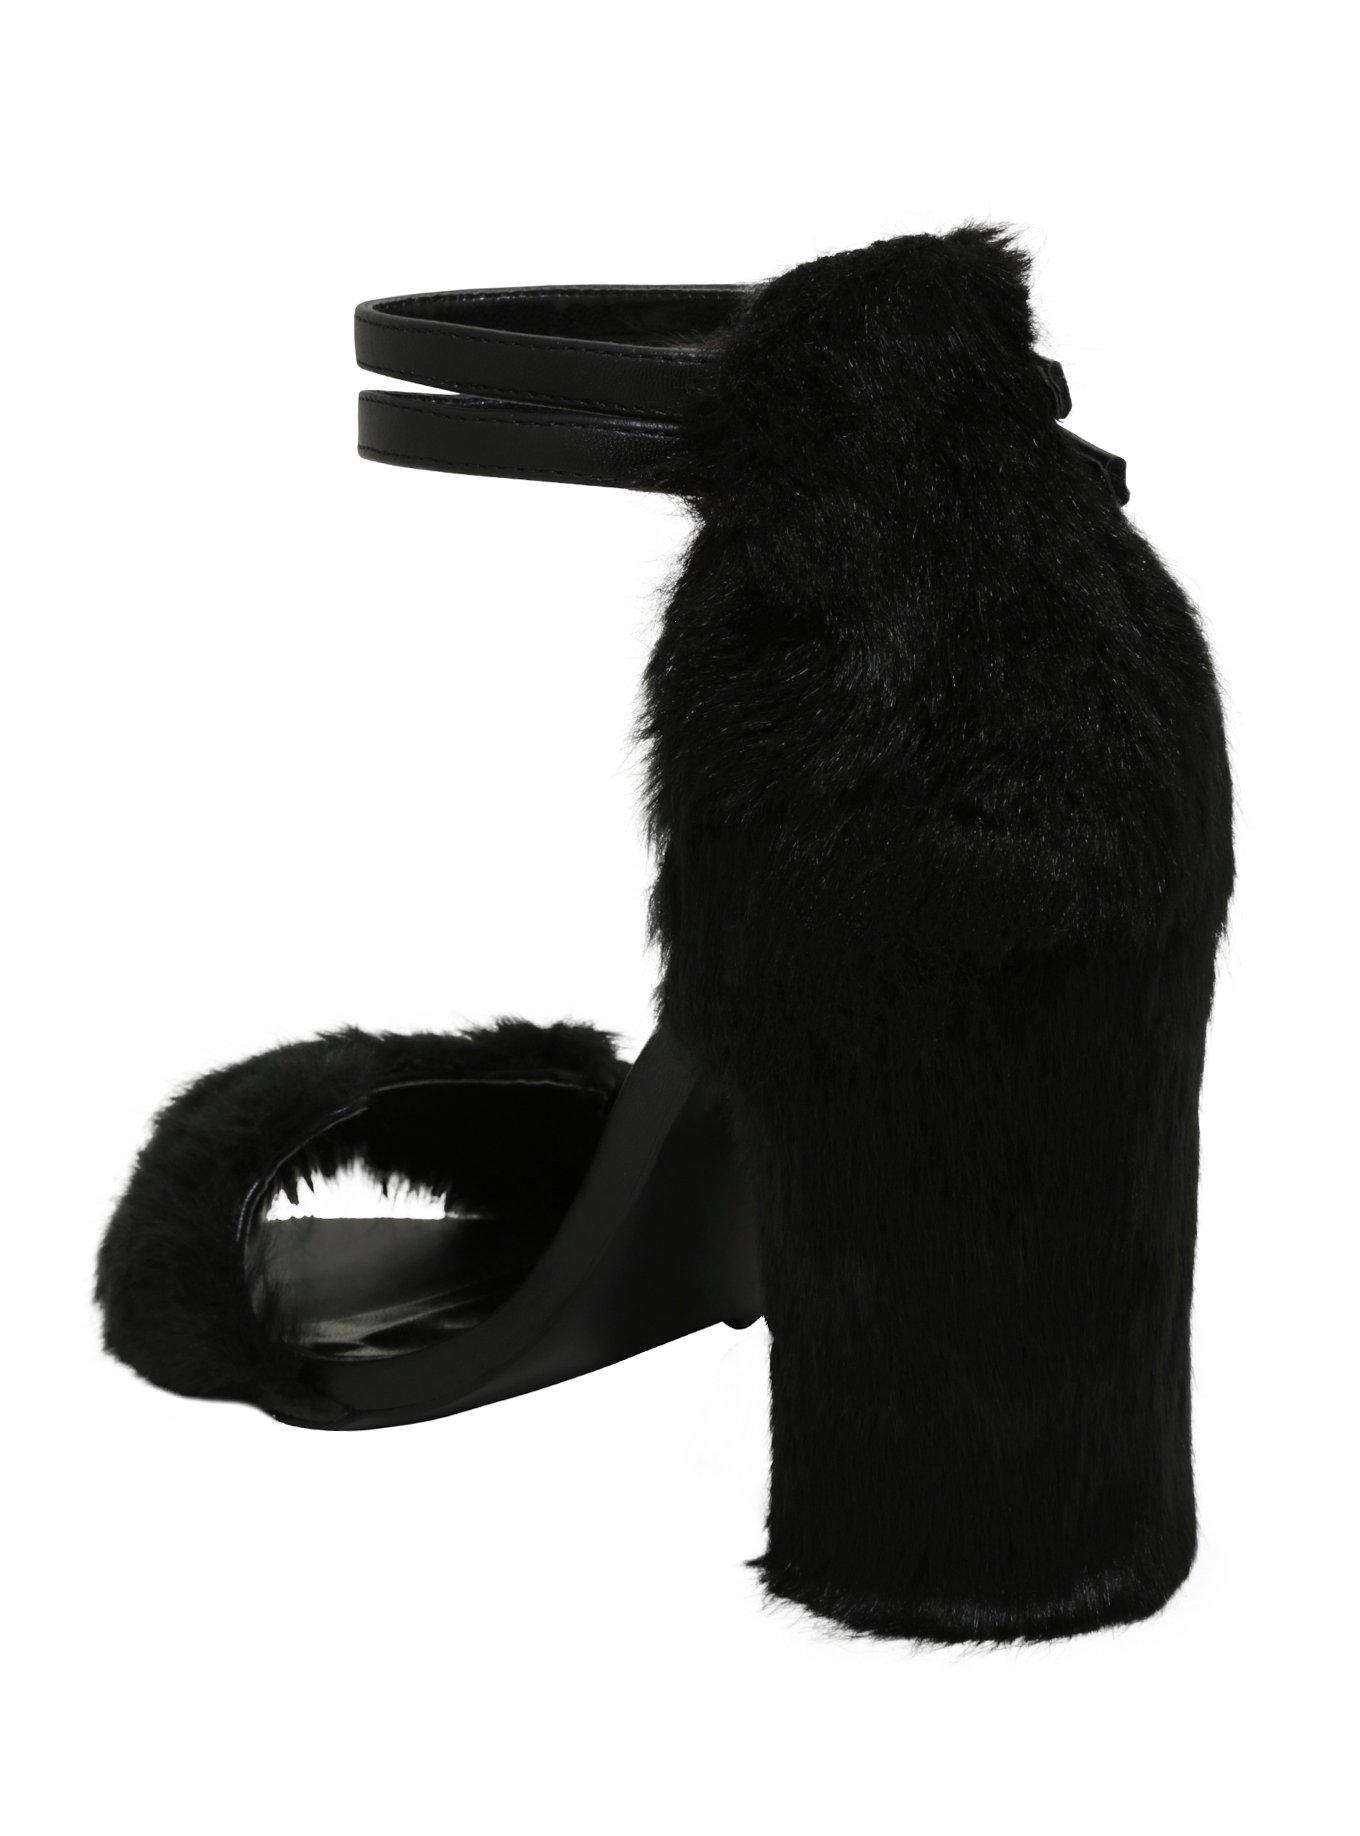 Black Faux Fur Cat Cutout Ankle-Strap Heels, , alternate